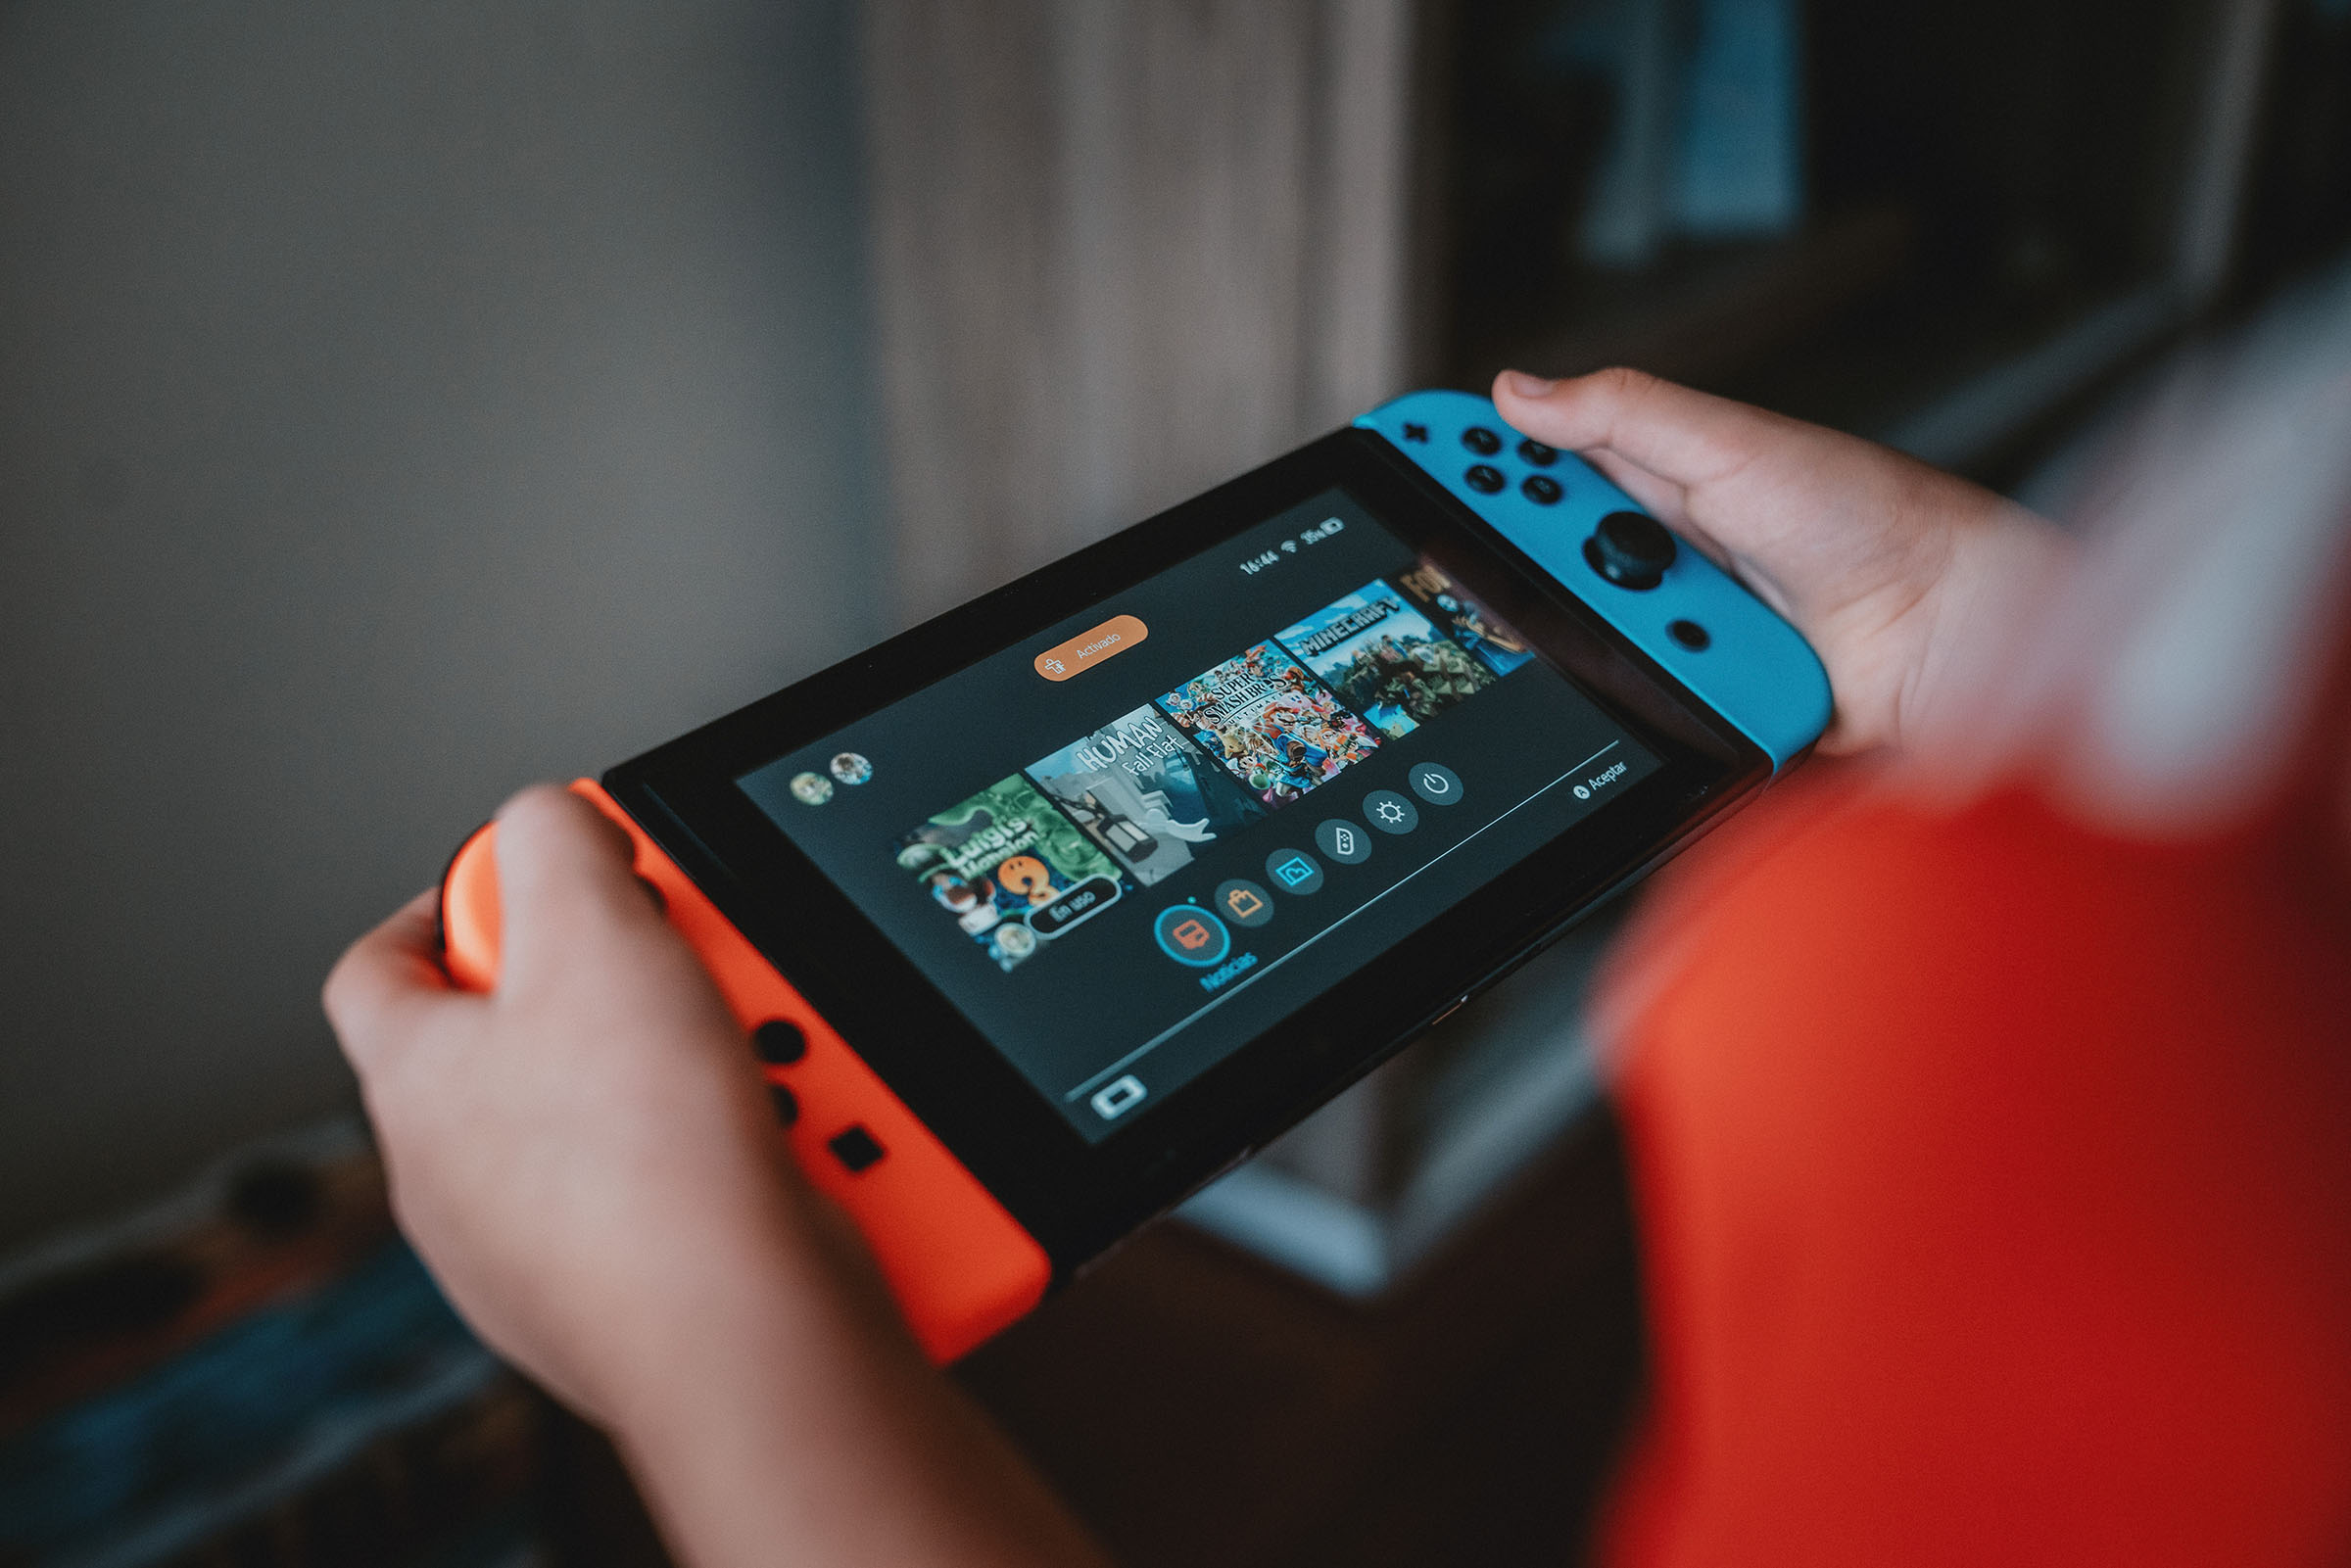 Top 10 Jogos Online para jogar no Nintendo Switch com Amigos 